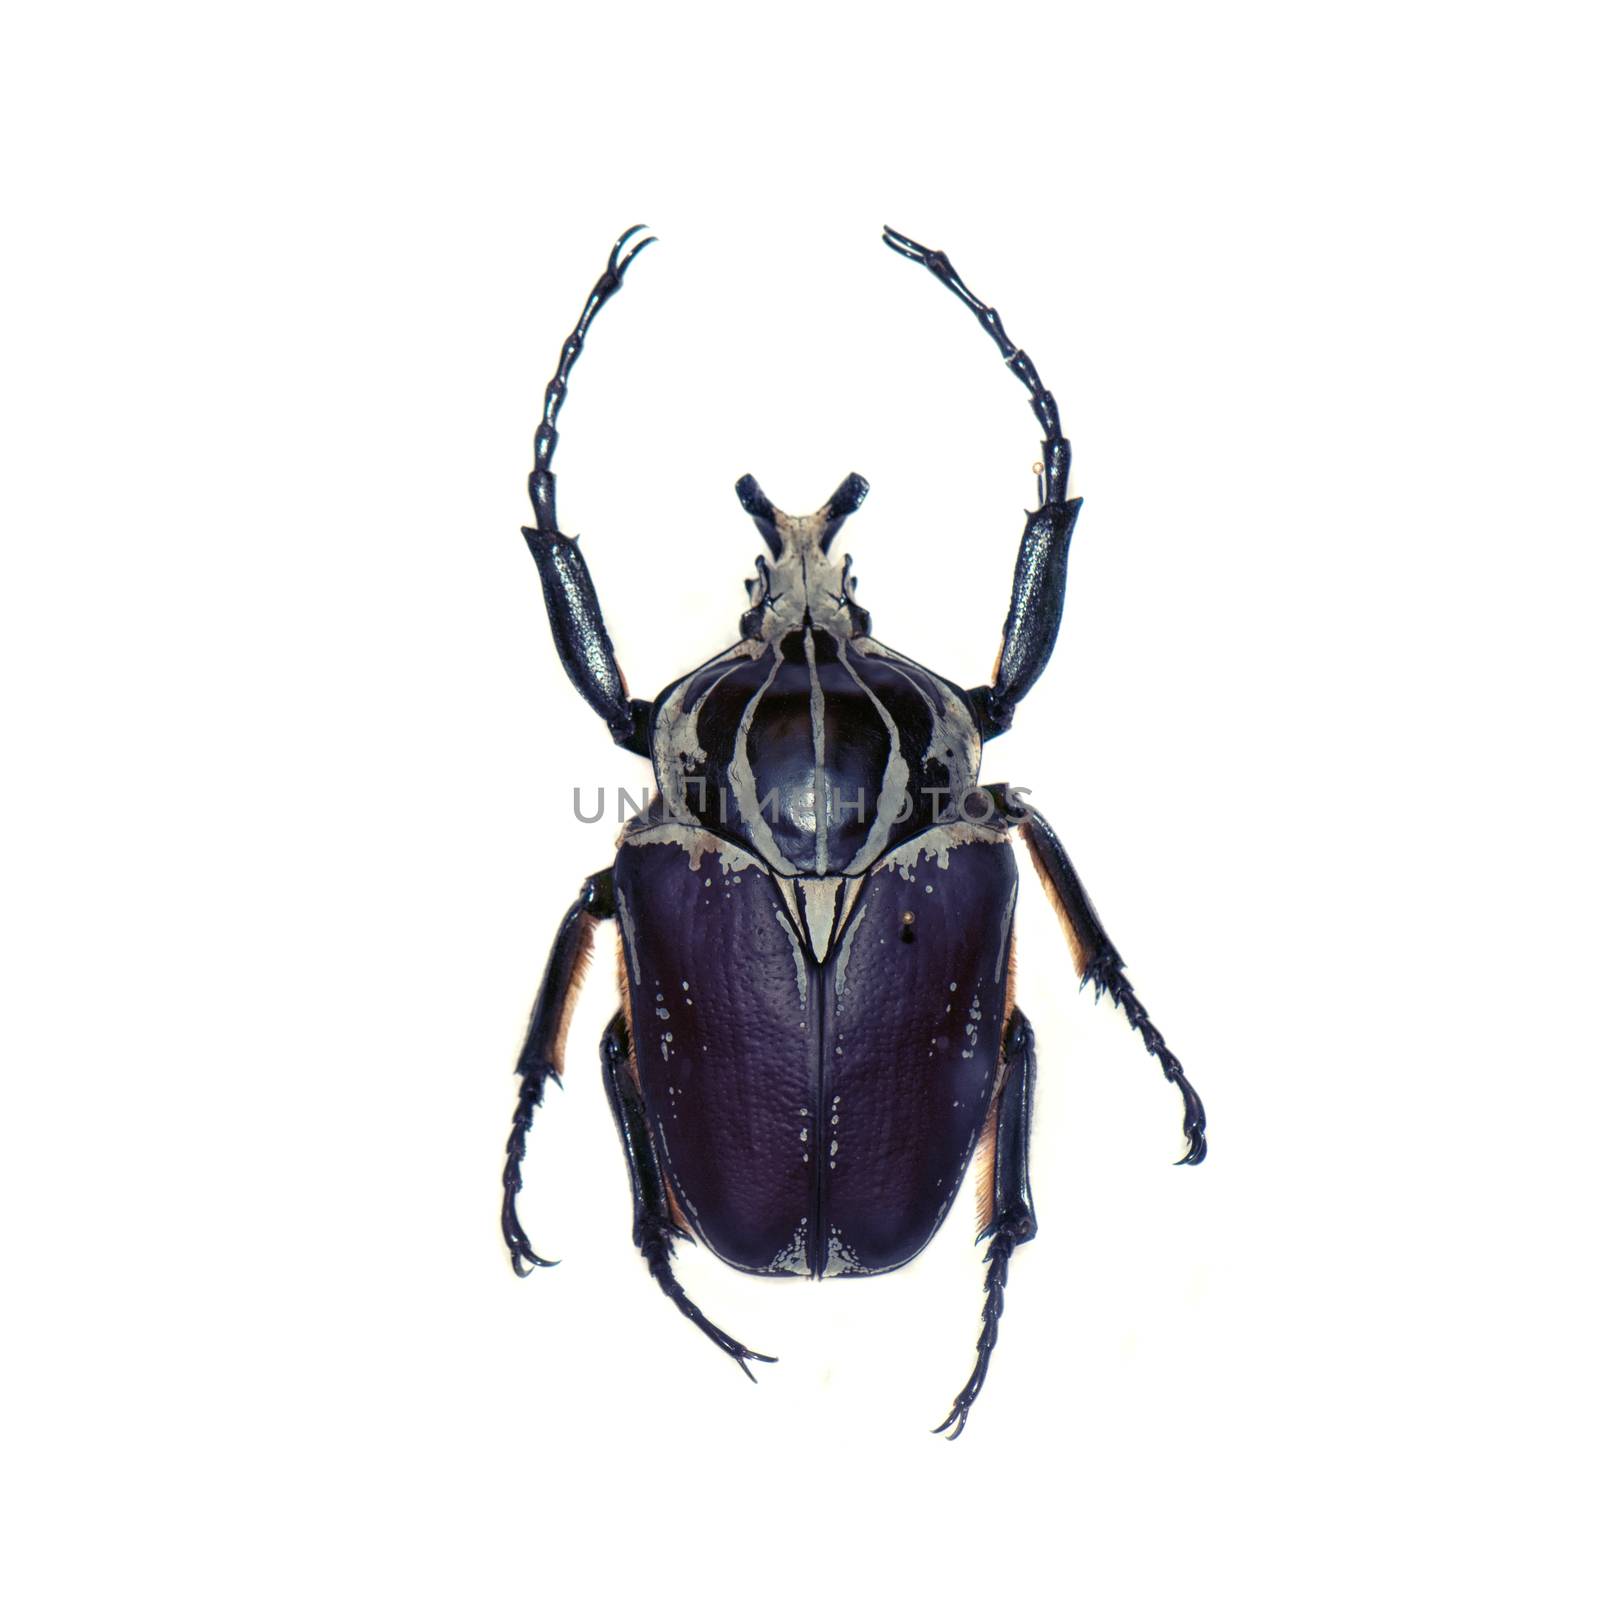 Goliath beetle (Goliathus goliathus) isolated against white background